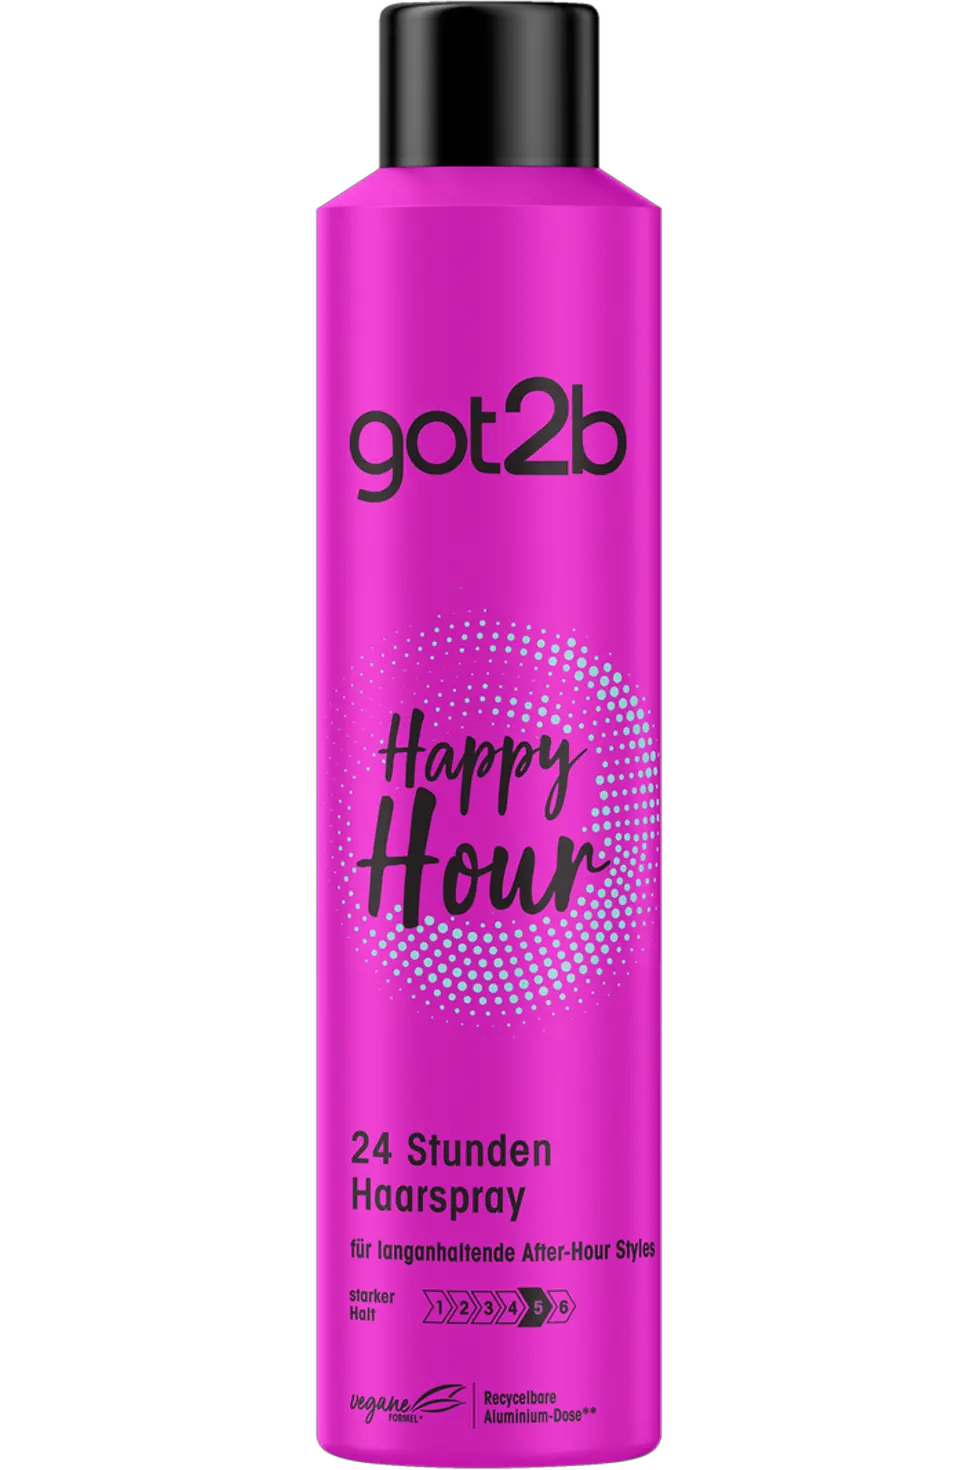 
got2b Haarspray Happy Hour 24 Stunden